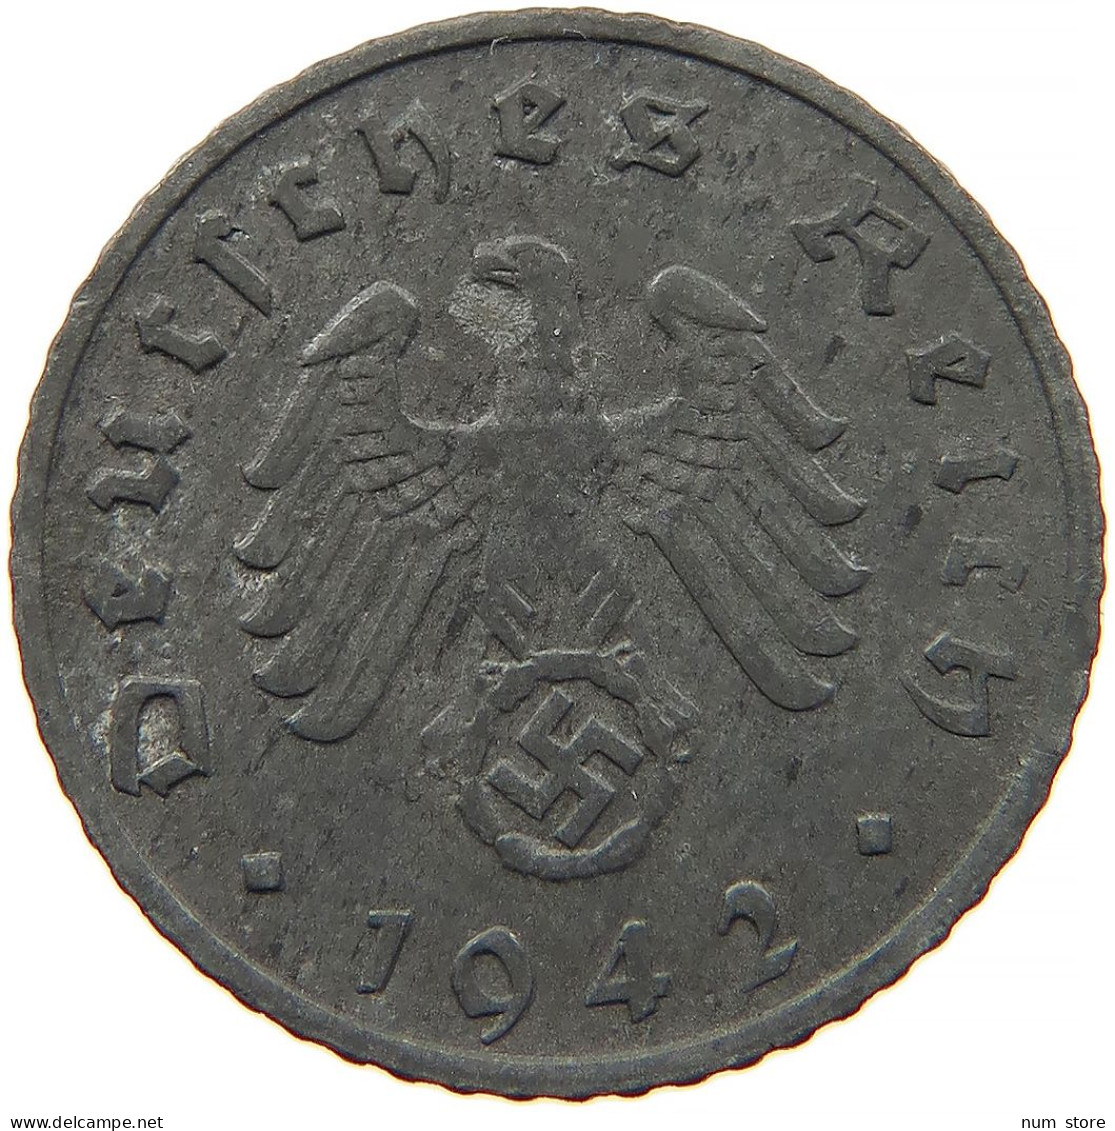 GERMANY 5 REICHSPFENNIG 1942 G #s091 0907 - 5 Reichspfennig